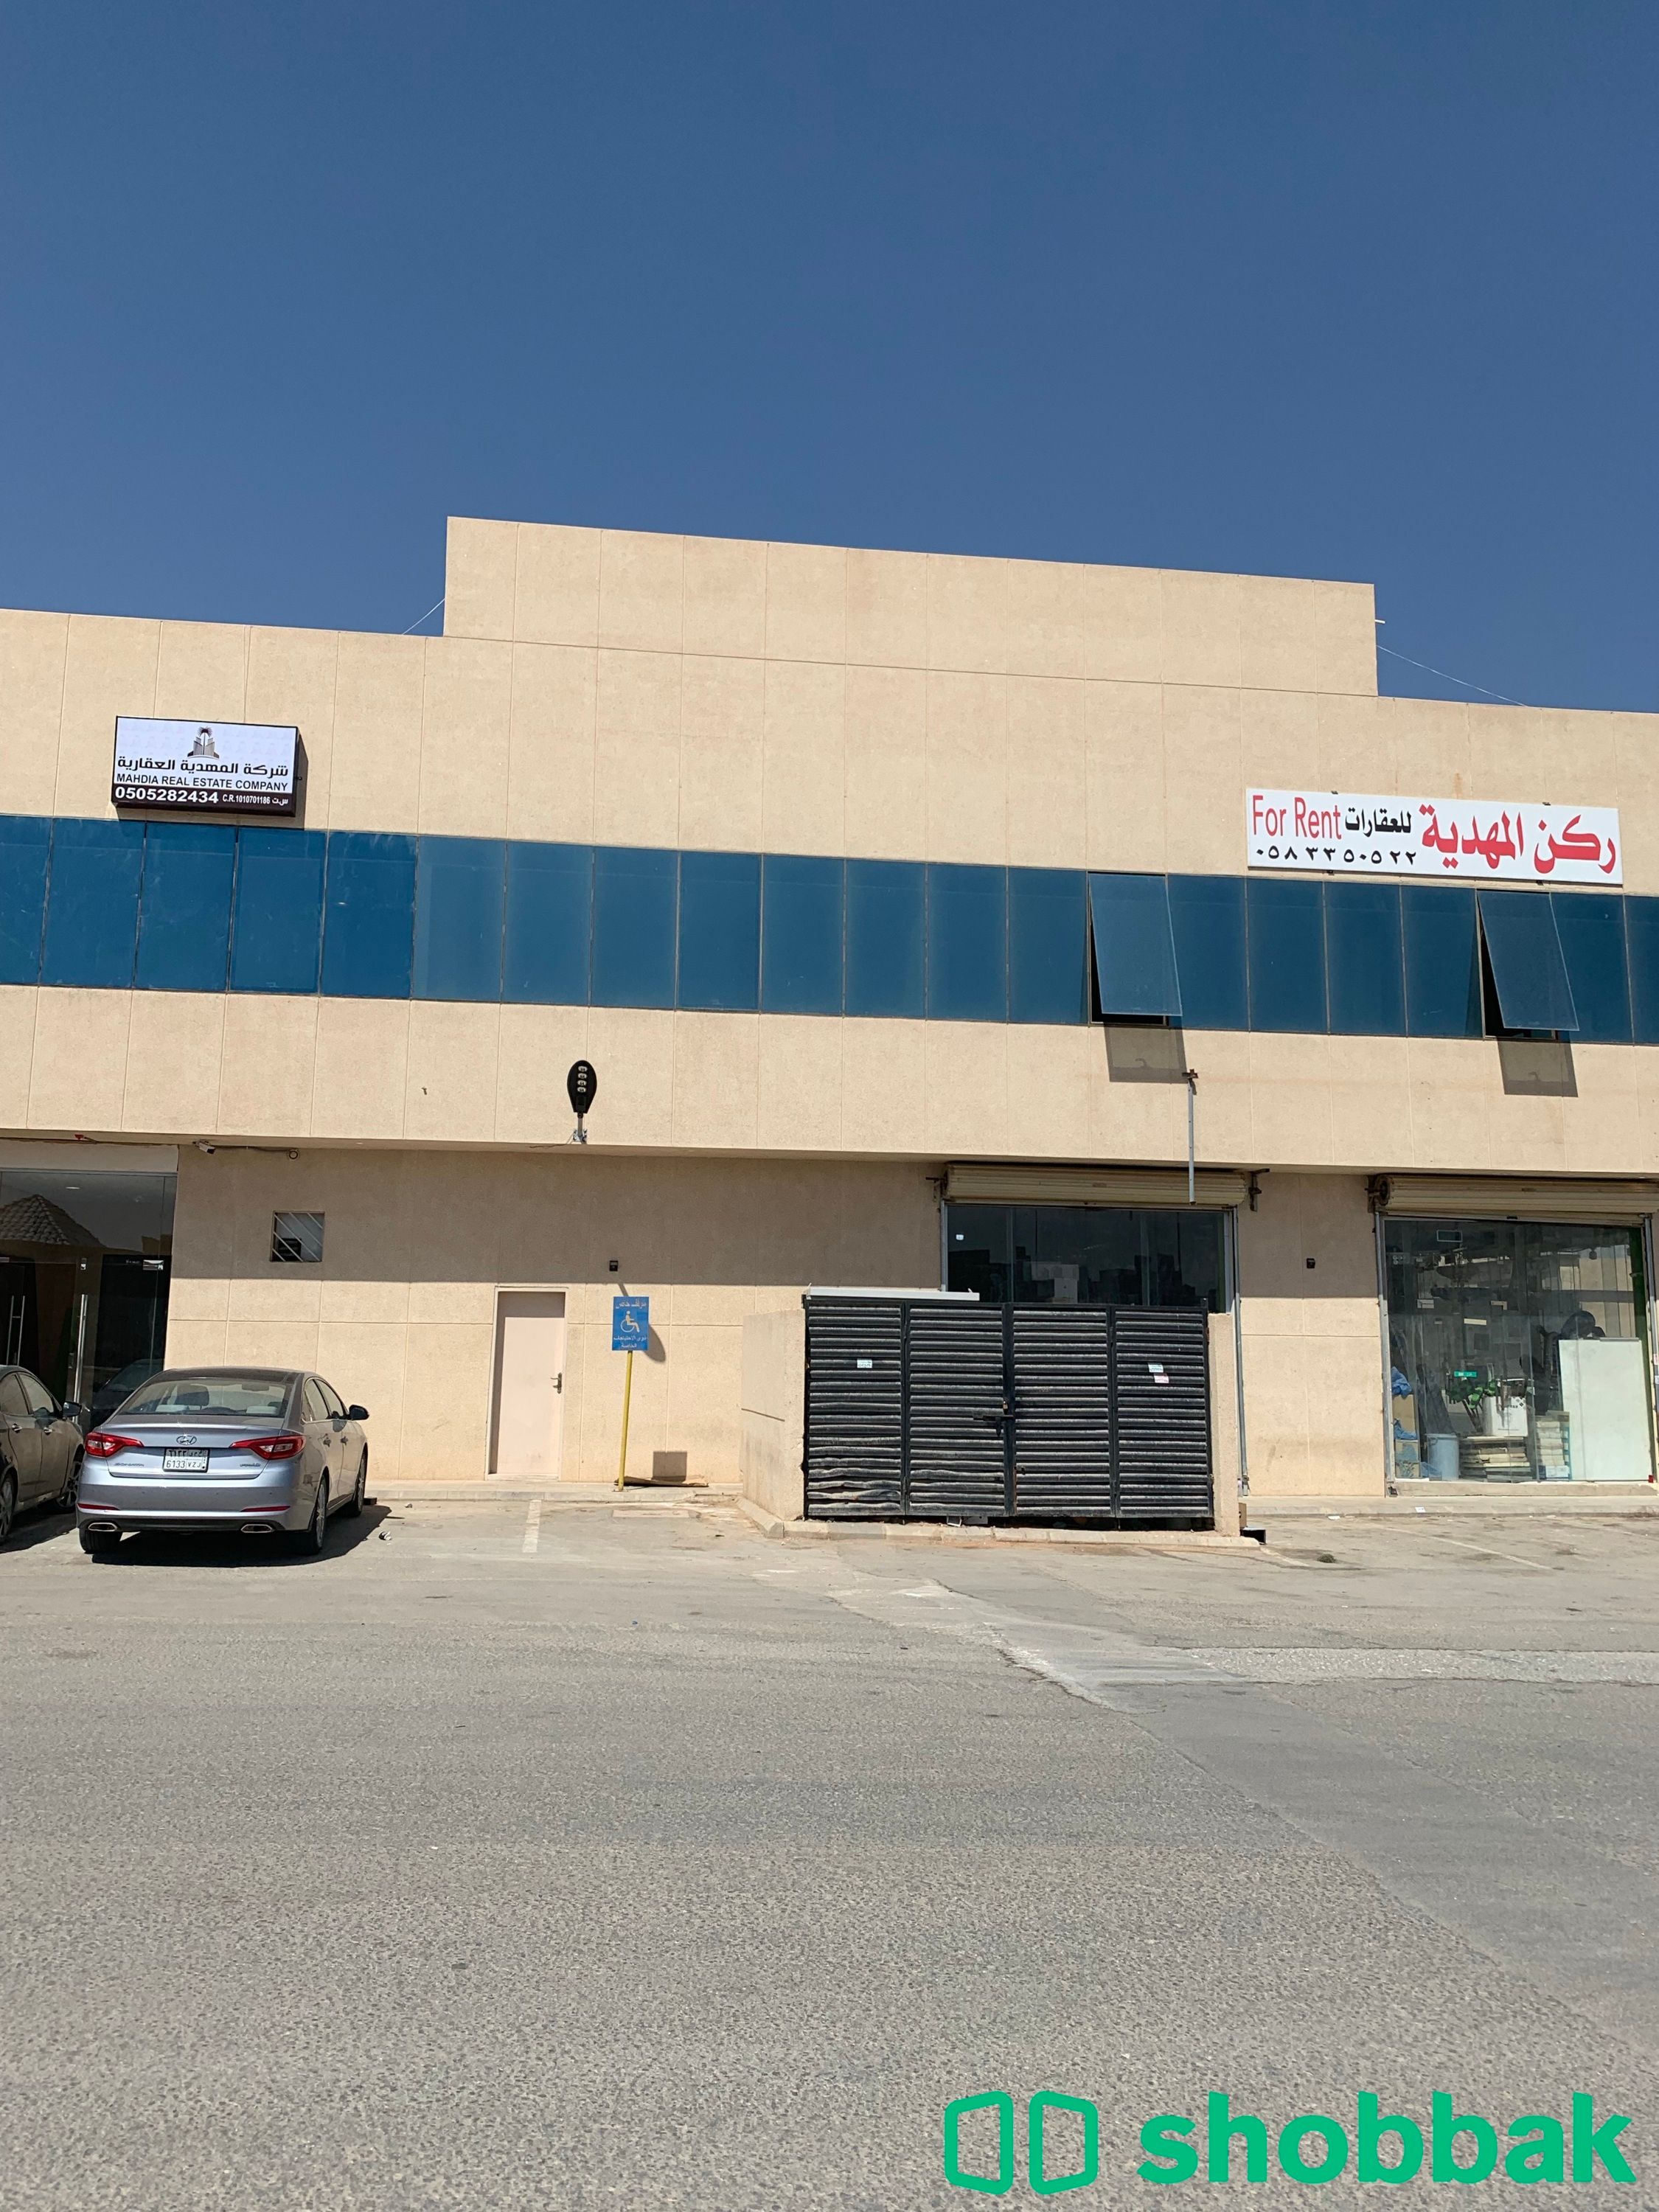 مكتب للايجار رقم 7  في حي المهديه  Shobbak Saudi Arabia